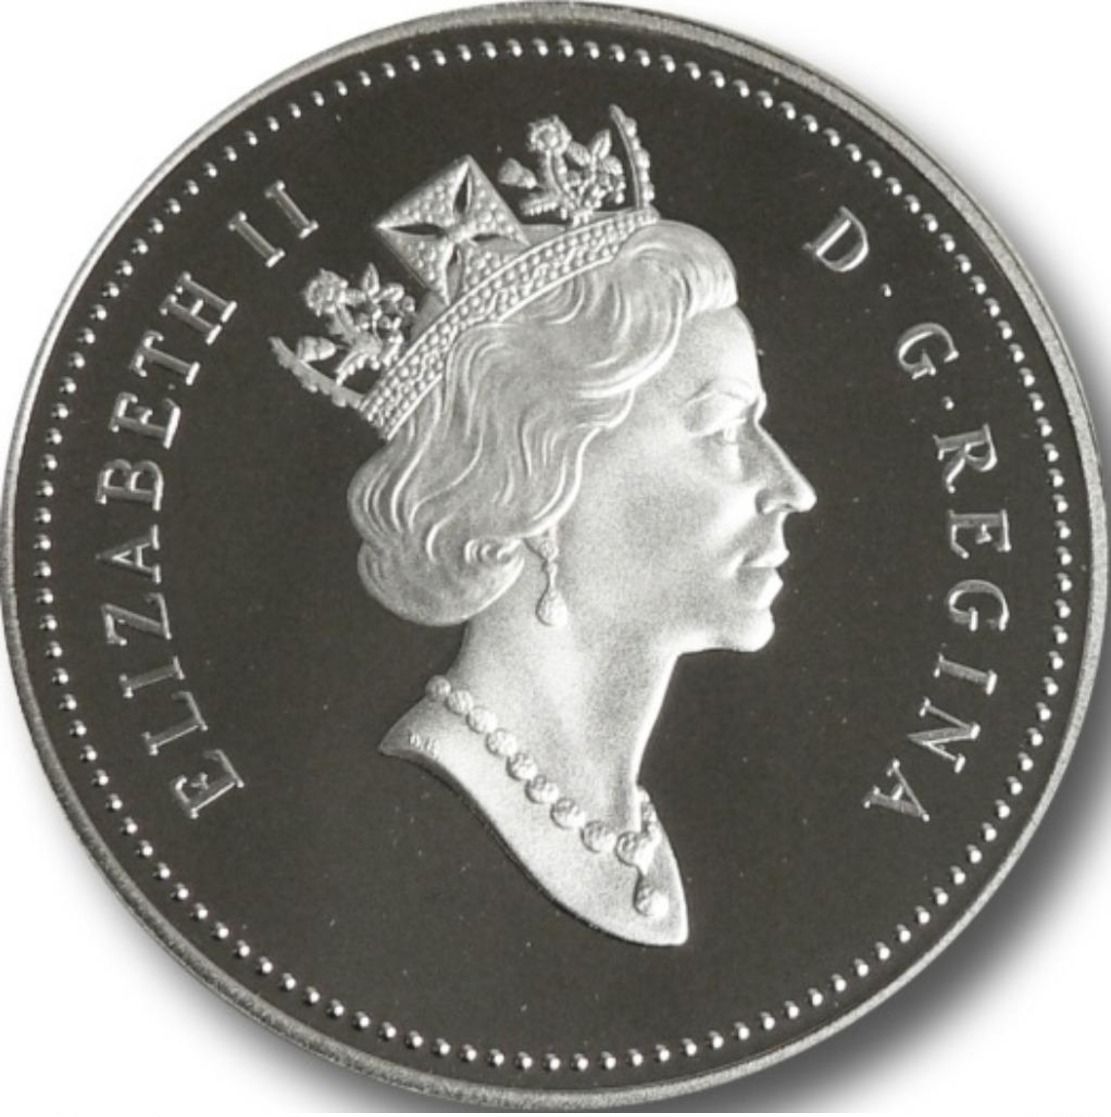 Canada, 1 Dollar 1998 - Silver Proof - Canada